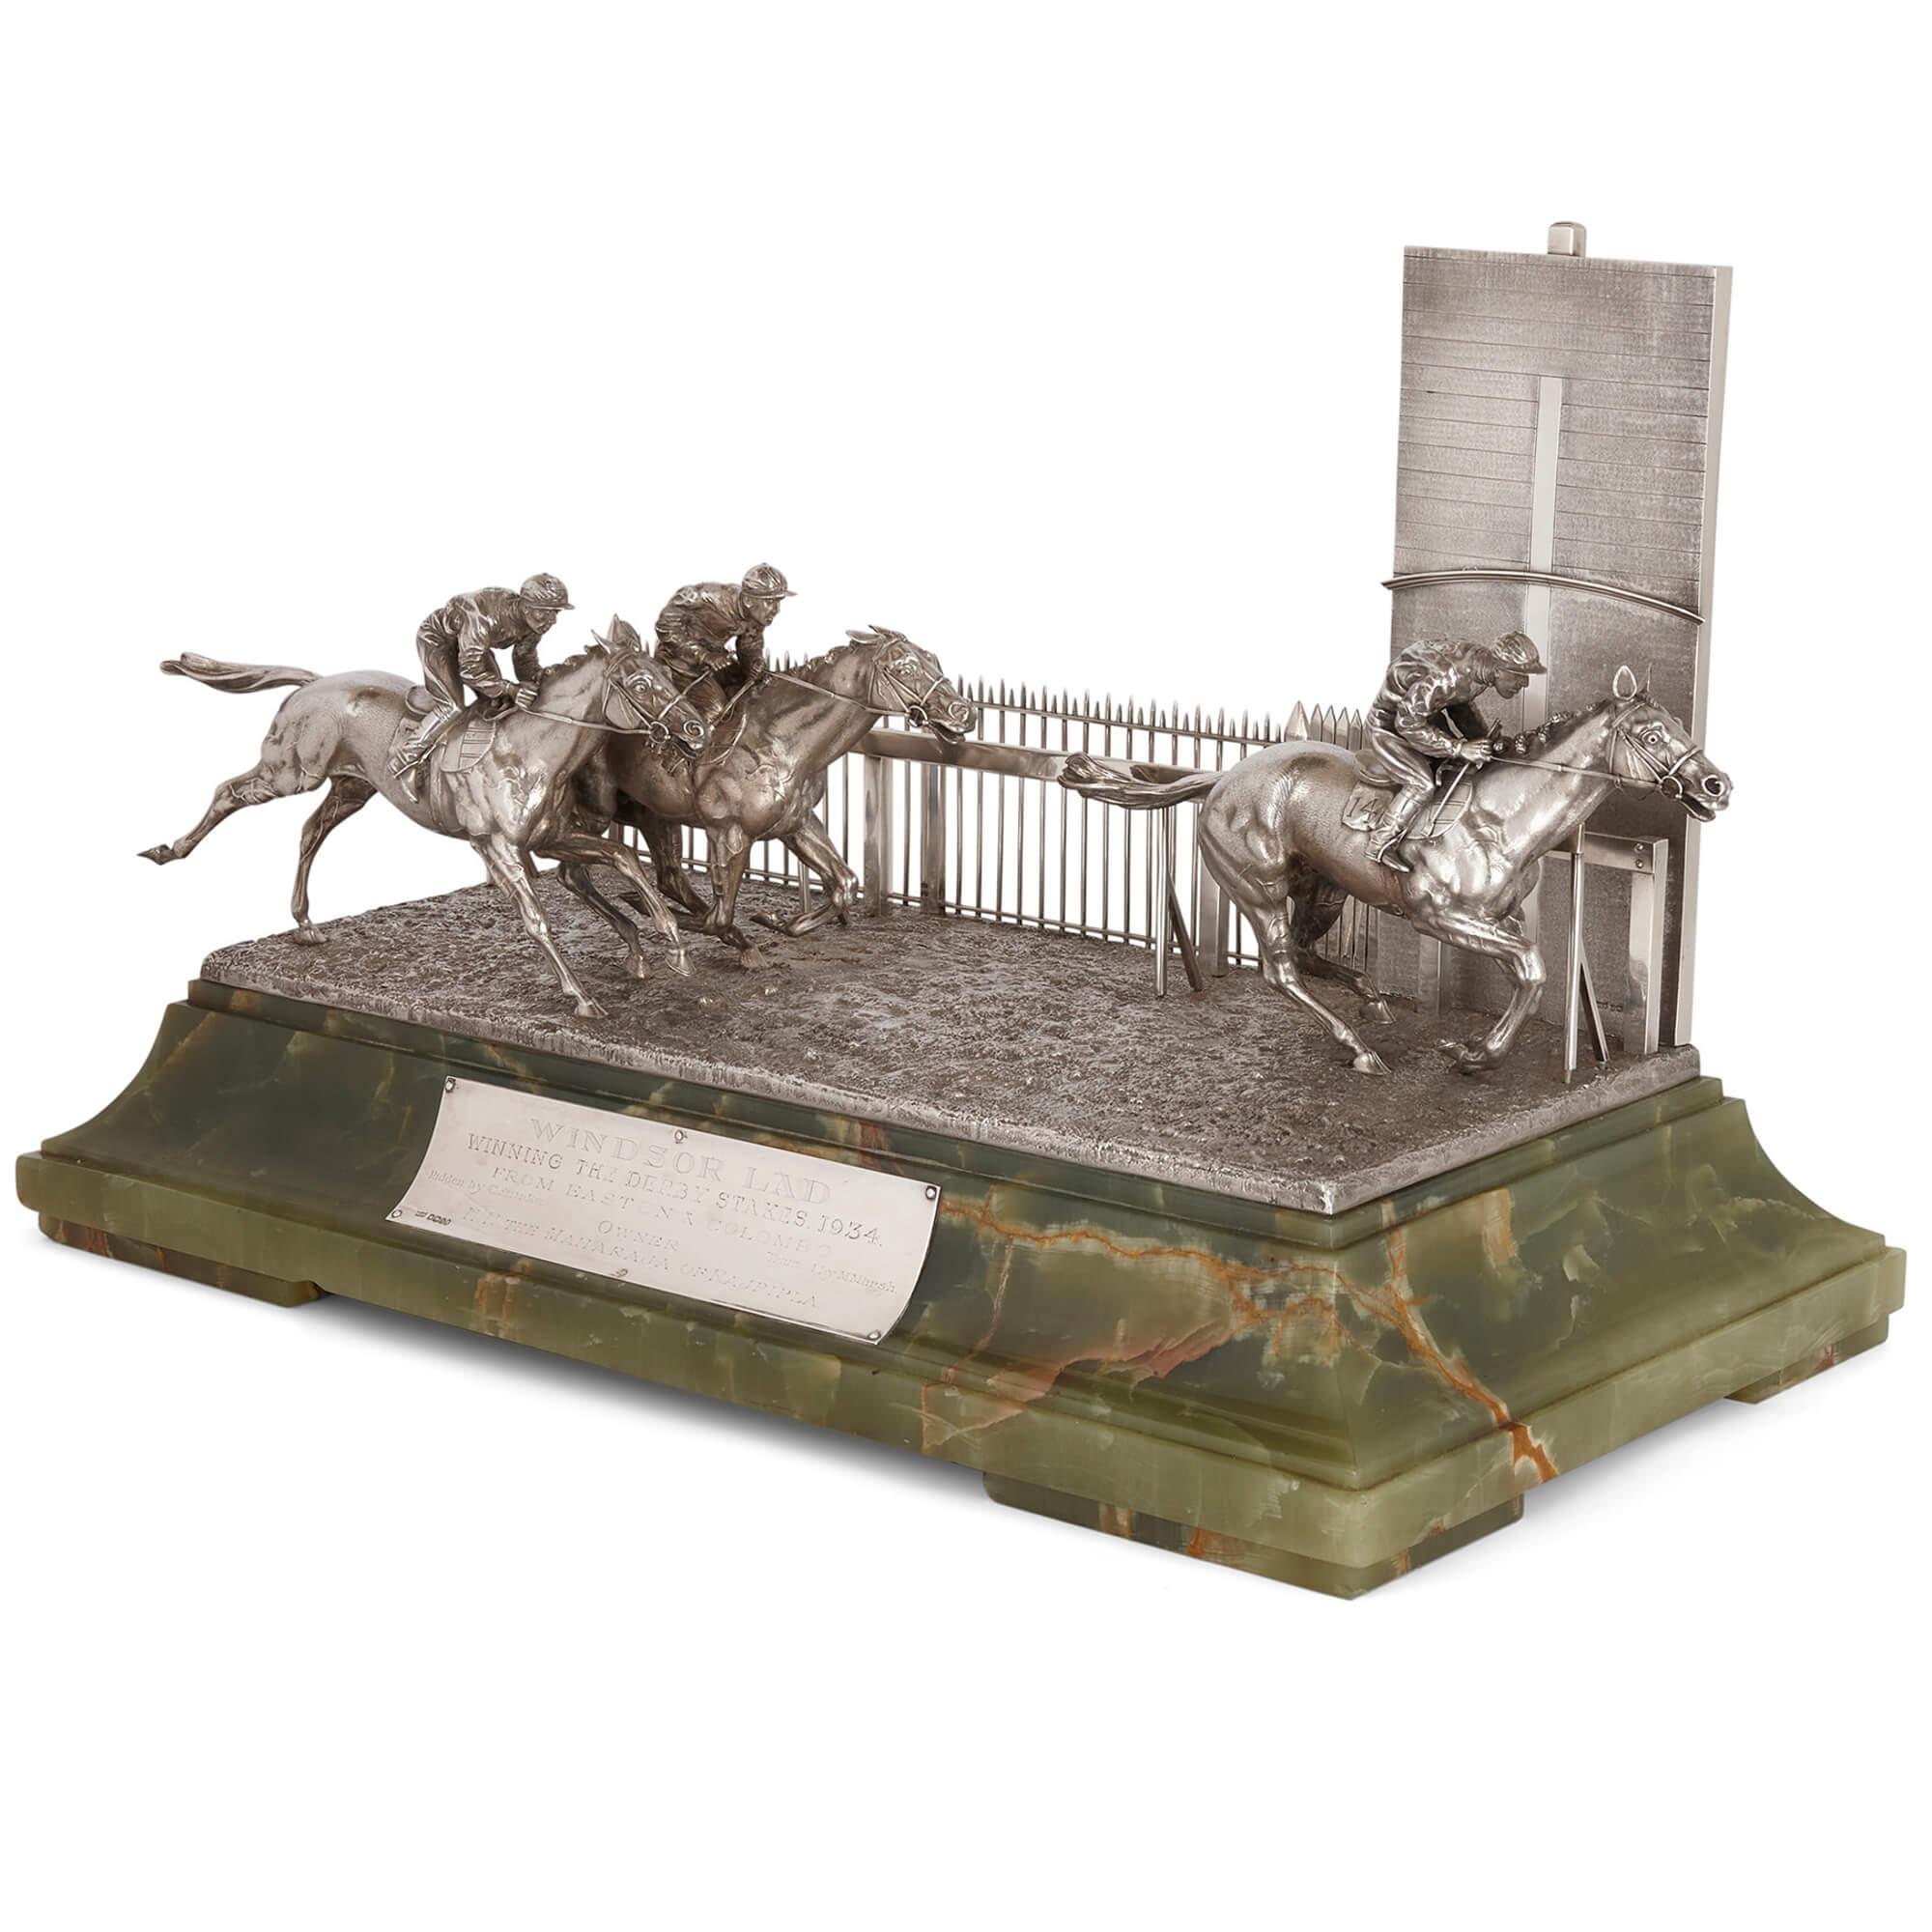 Skulptur aus Silber und Onyx für Pferderennen von Mappin and Webb
Englisch, 1935
Höhe 39cm, Breite 62cm, Tiefe 33cm

In Auftrag gegeben von H.H. Maharaja von Rajpipla Vijaysinhji Chhatrasinhji G.B.E. K.C.S.I. (1890-1951). Diese beeindruckende